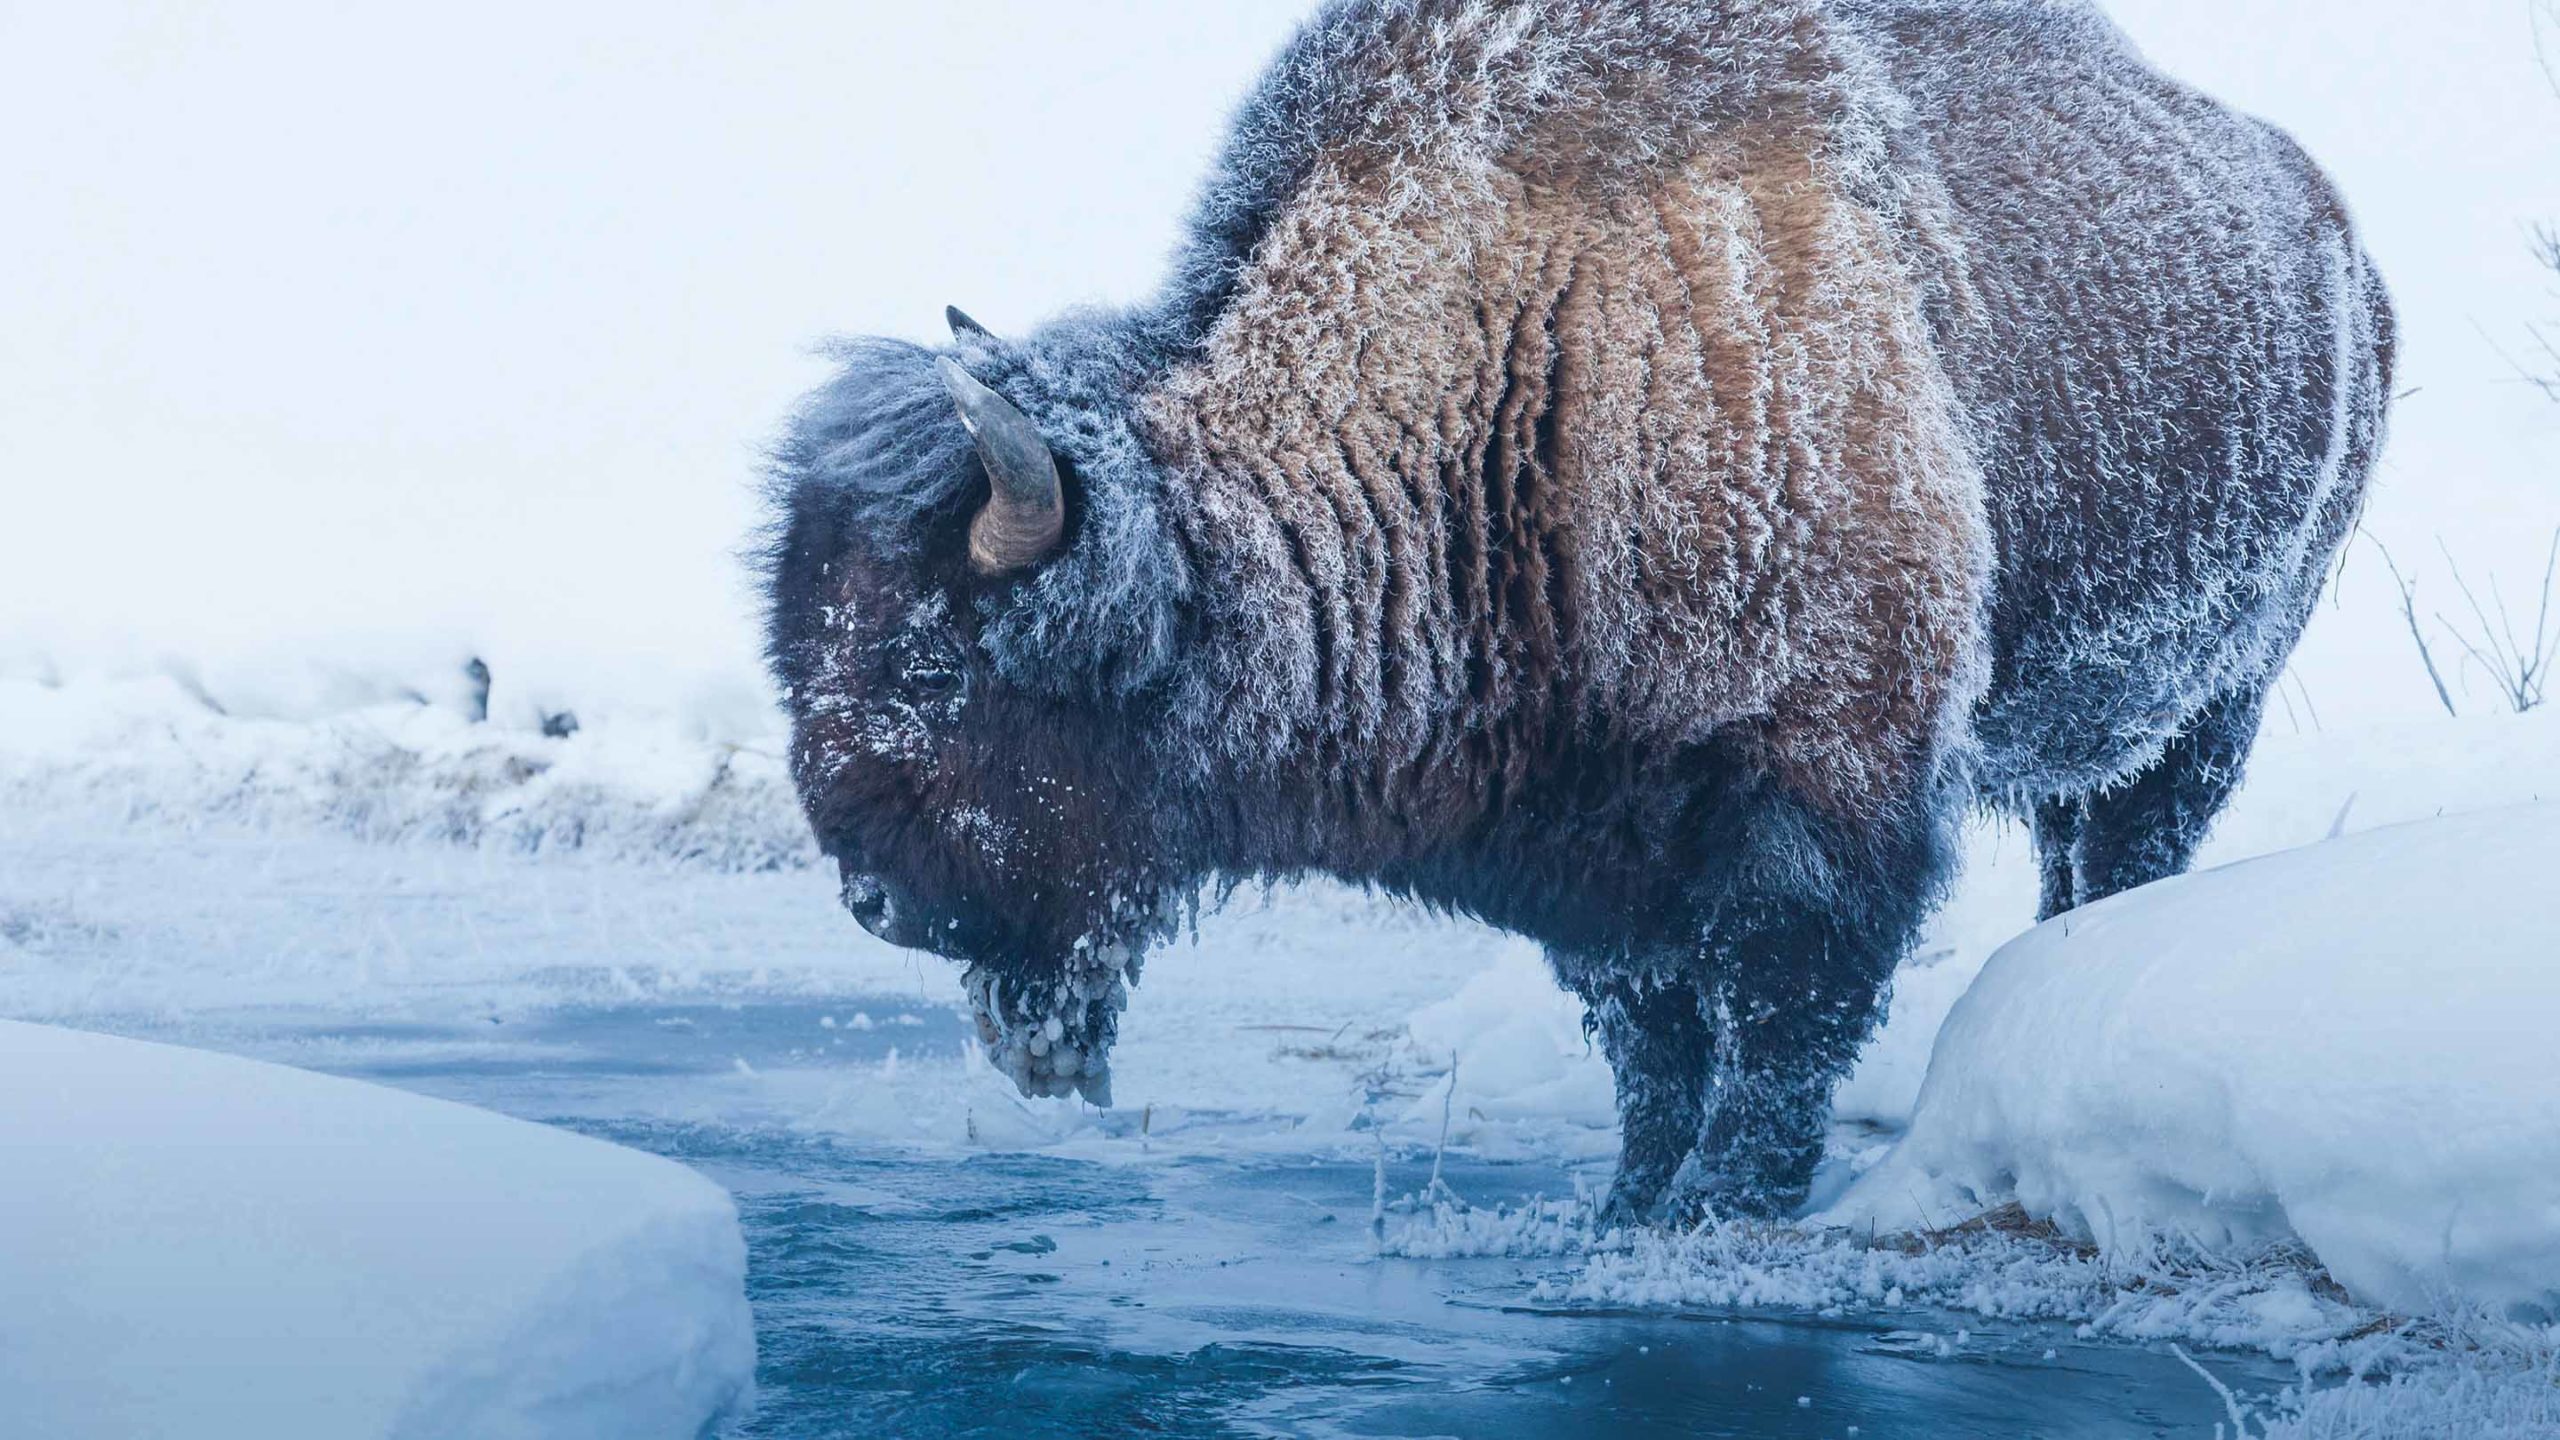 Winter Bison